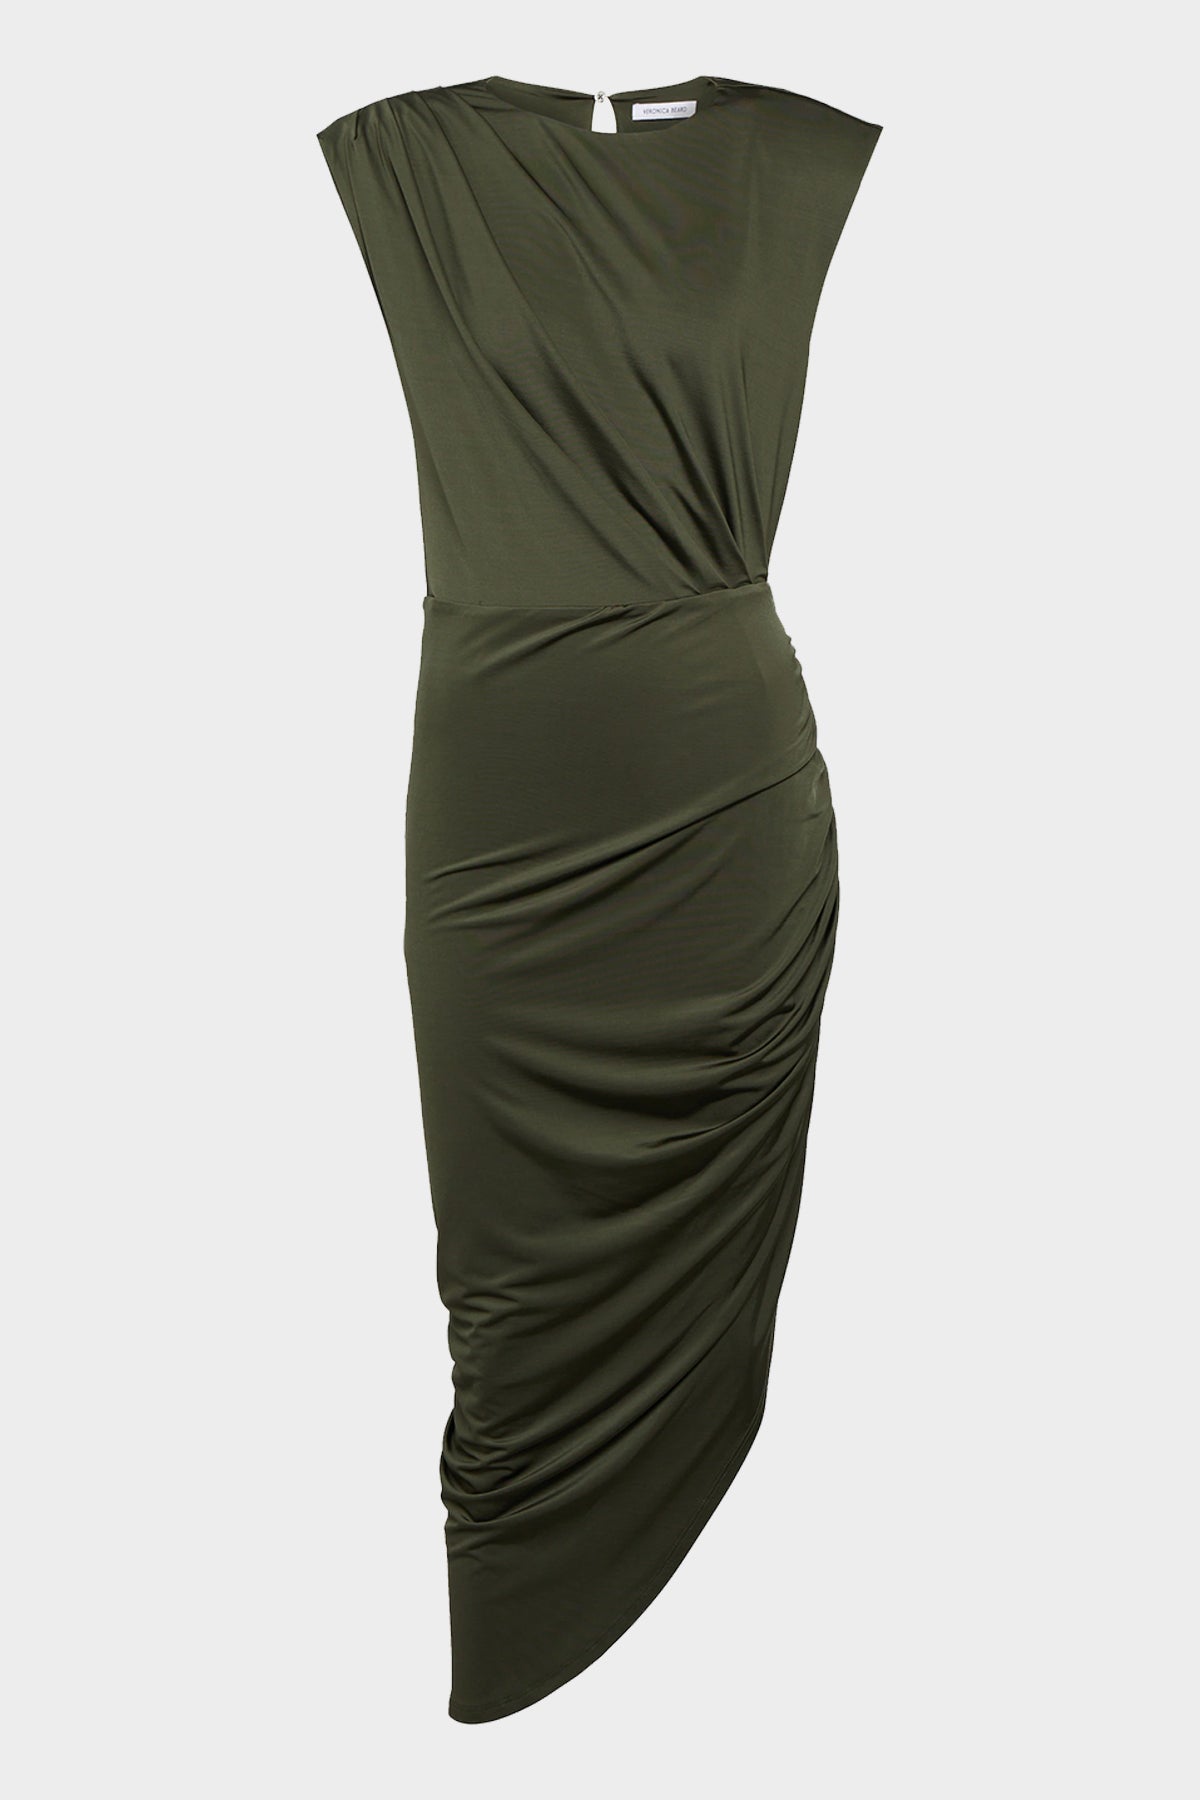 Merrith Dress in Loden - shop-olivia.com